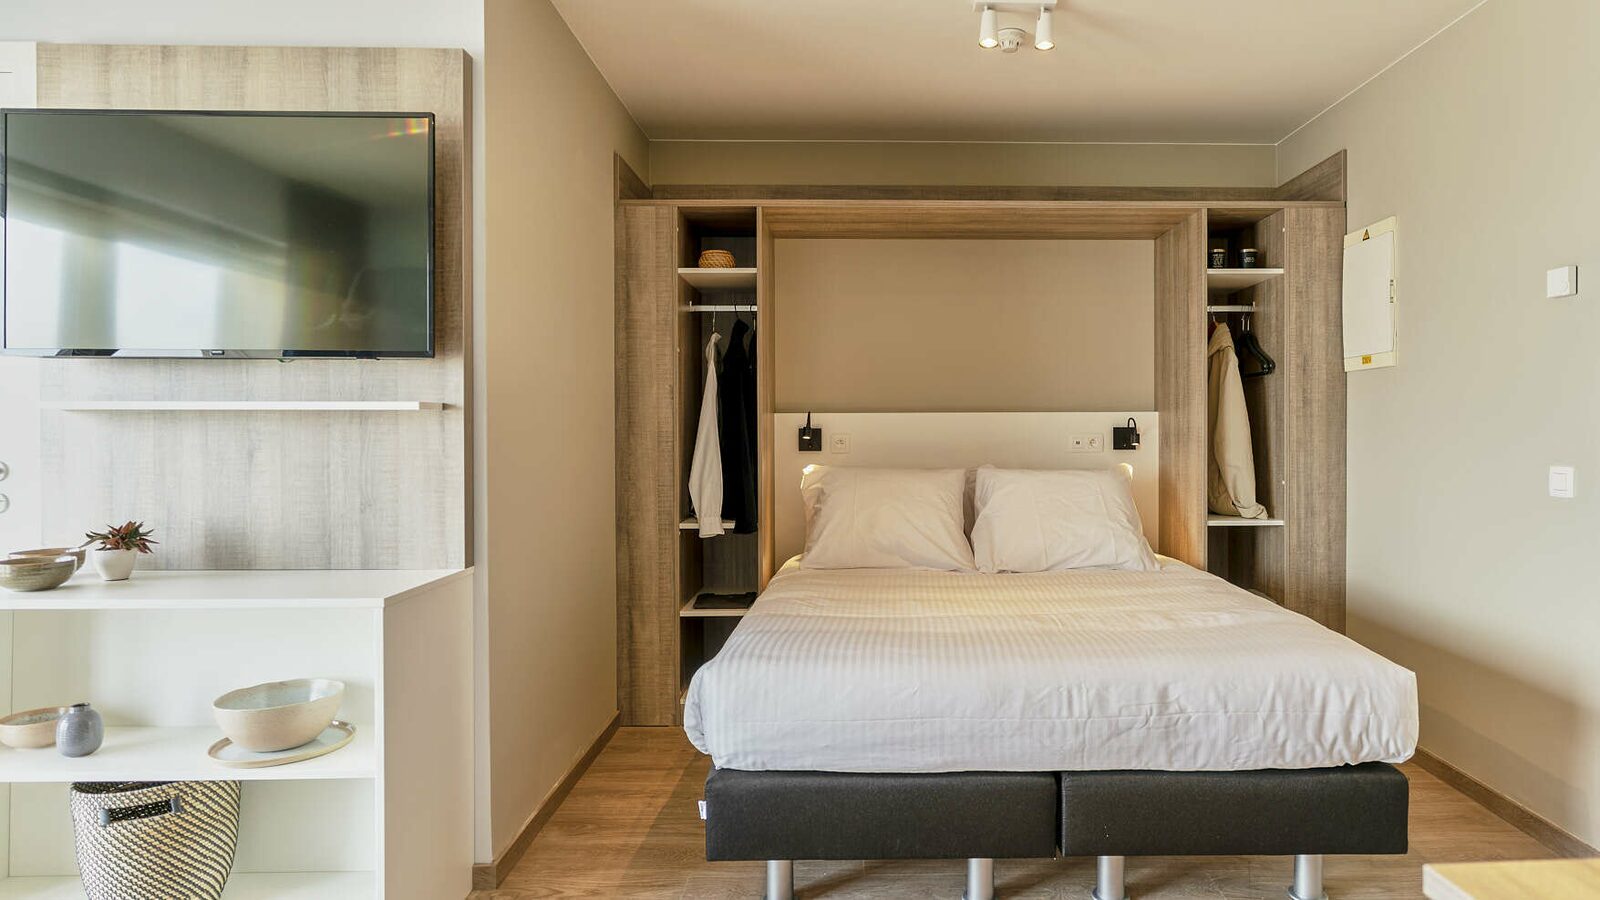 Comfort Suite - 4p | Chambre à coucher - Coin couchage | Balcon - Vue sur mer